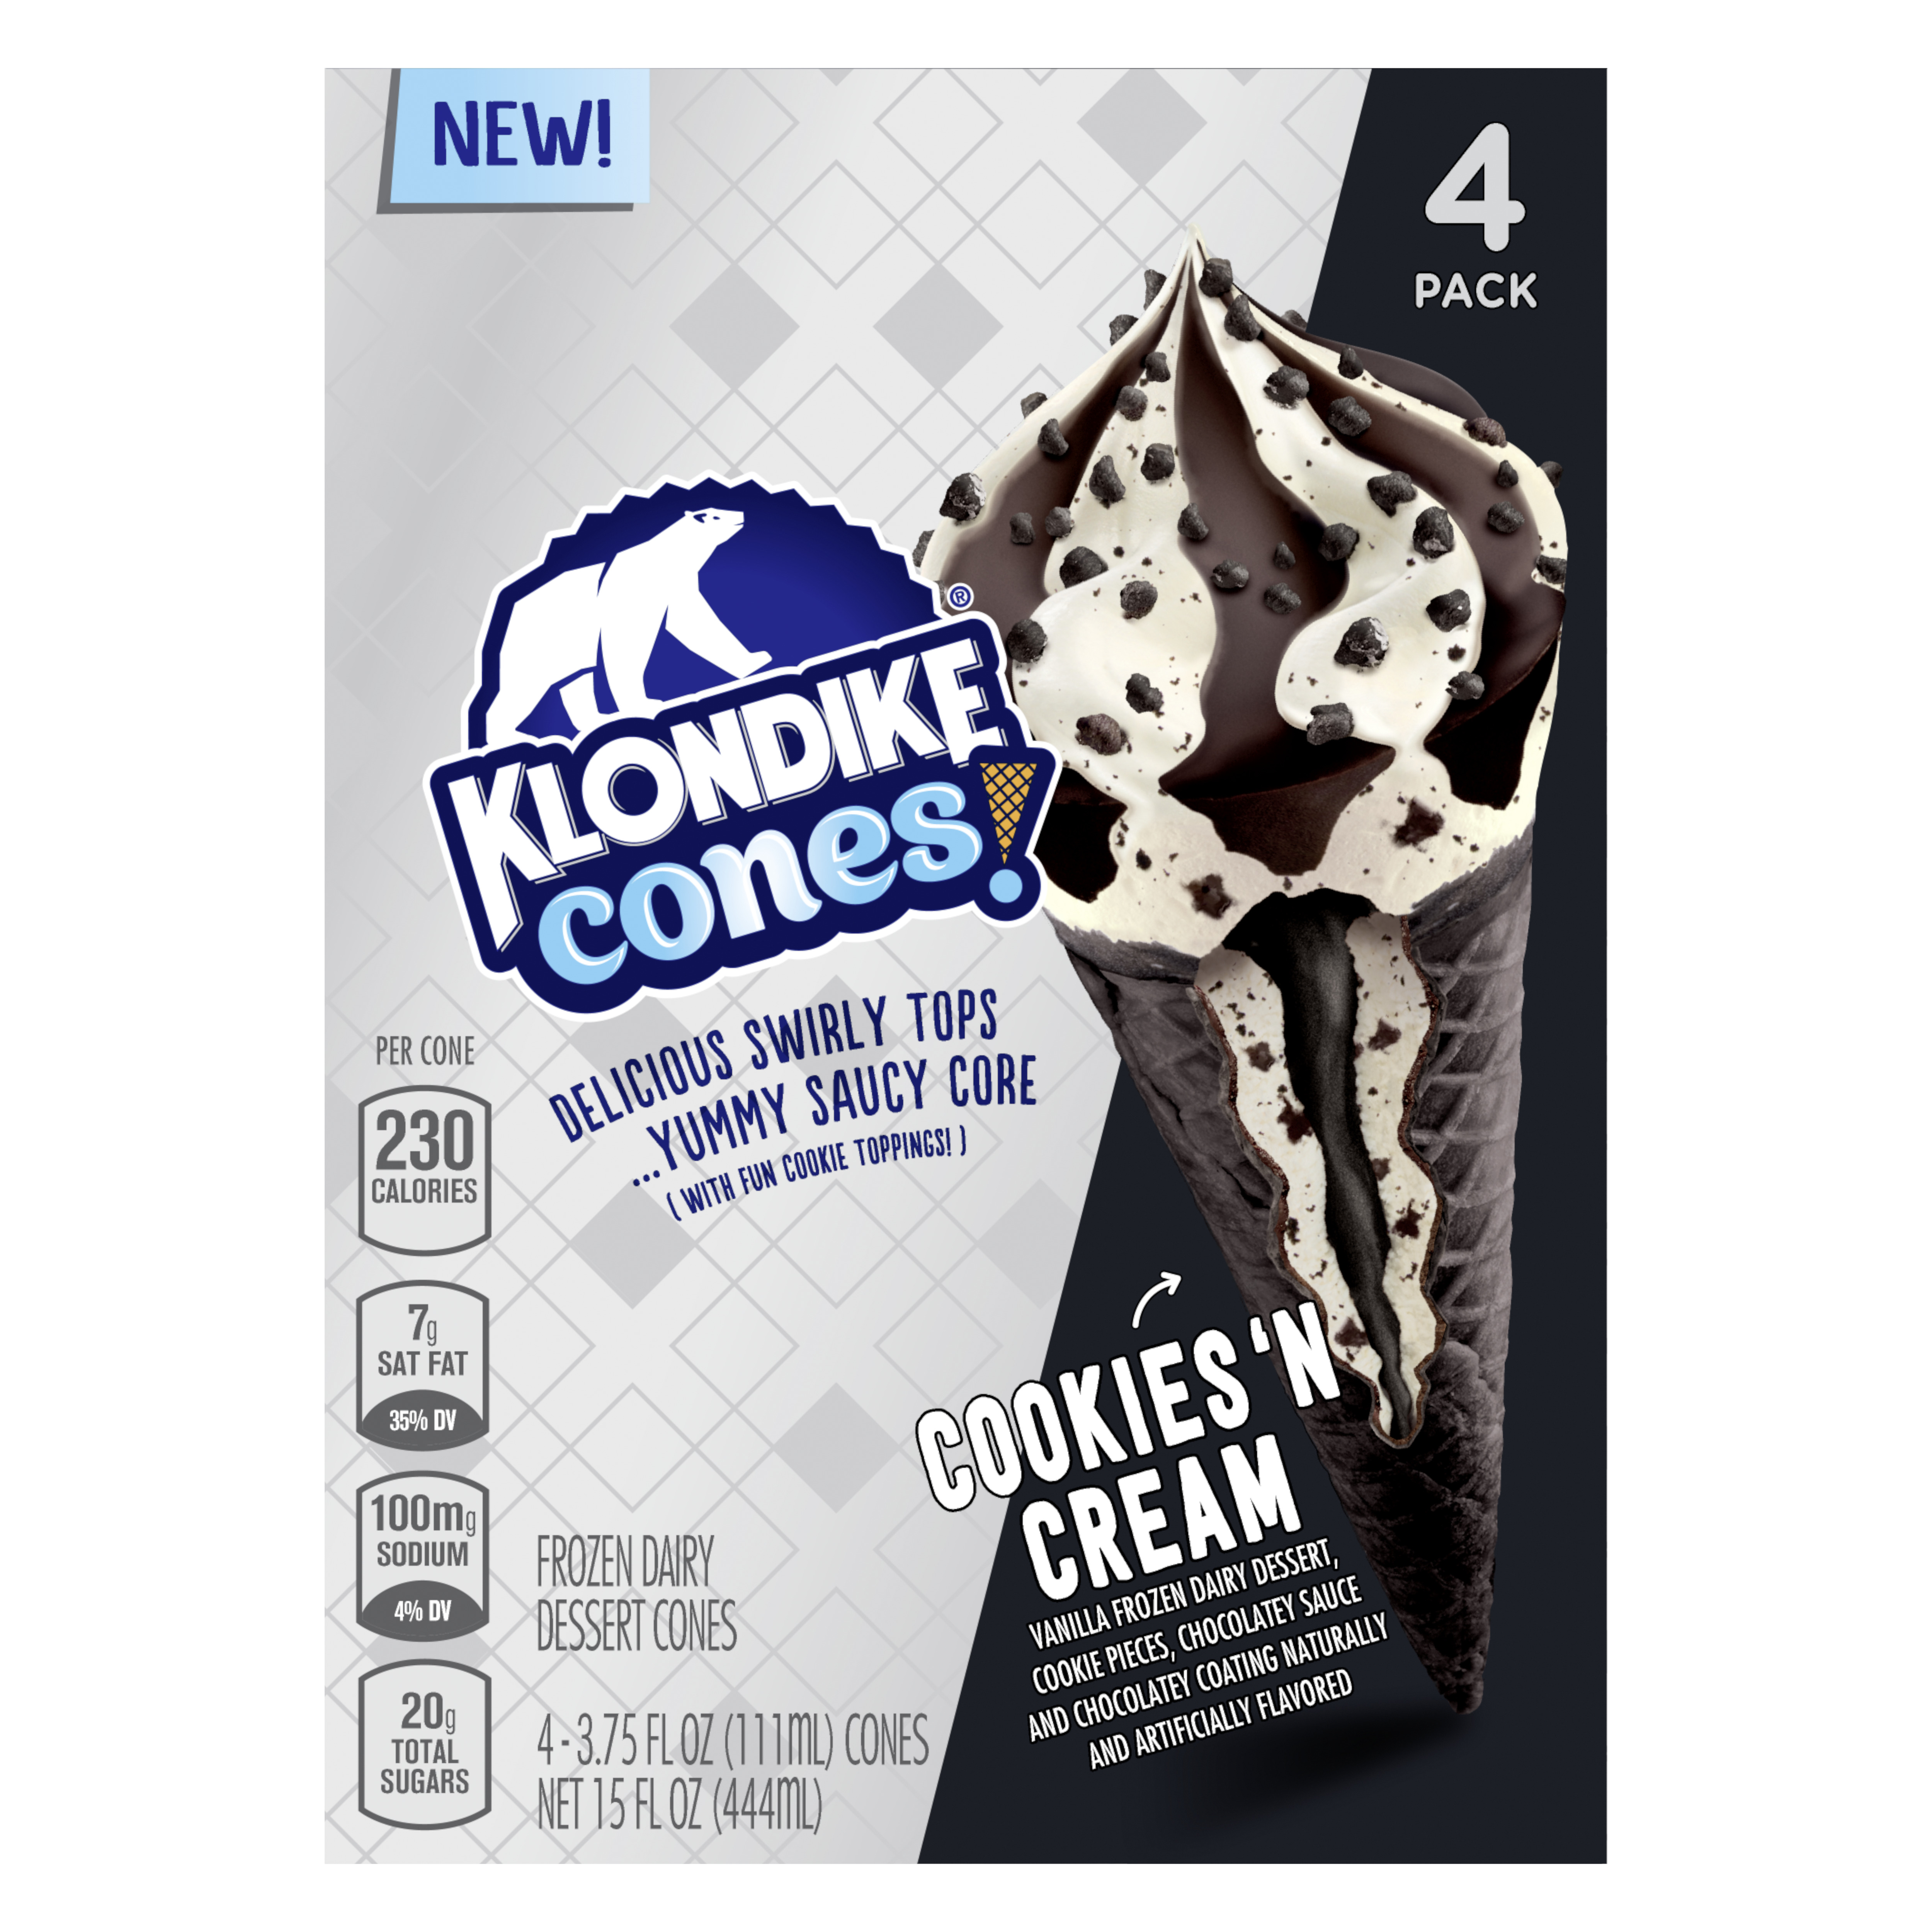 Klondike Cones Frozen Dairy Dessert Cones Cookies N Cream Smartlabel™